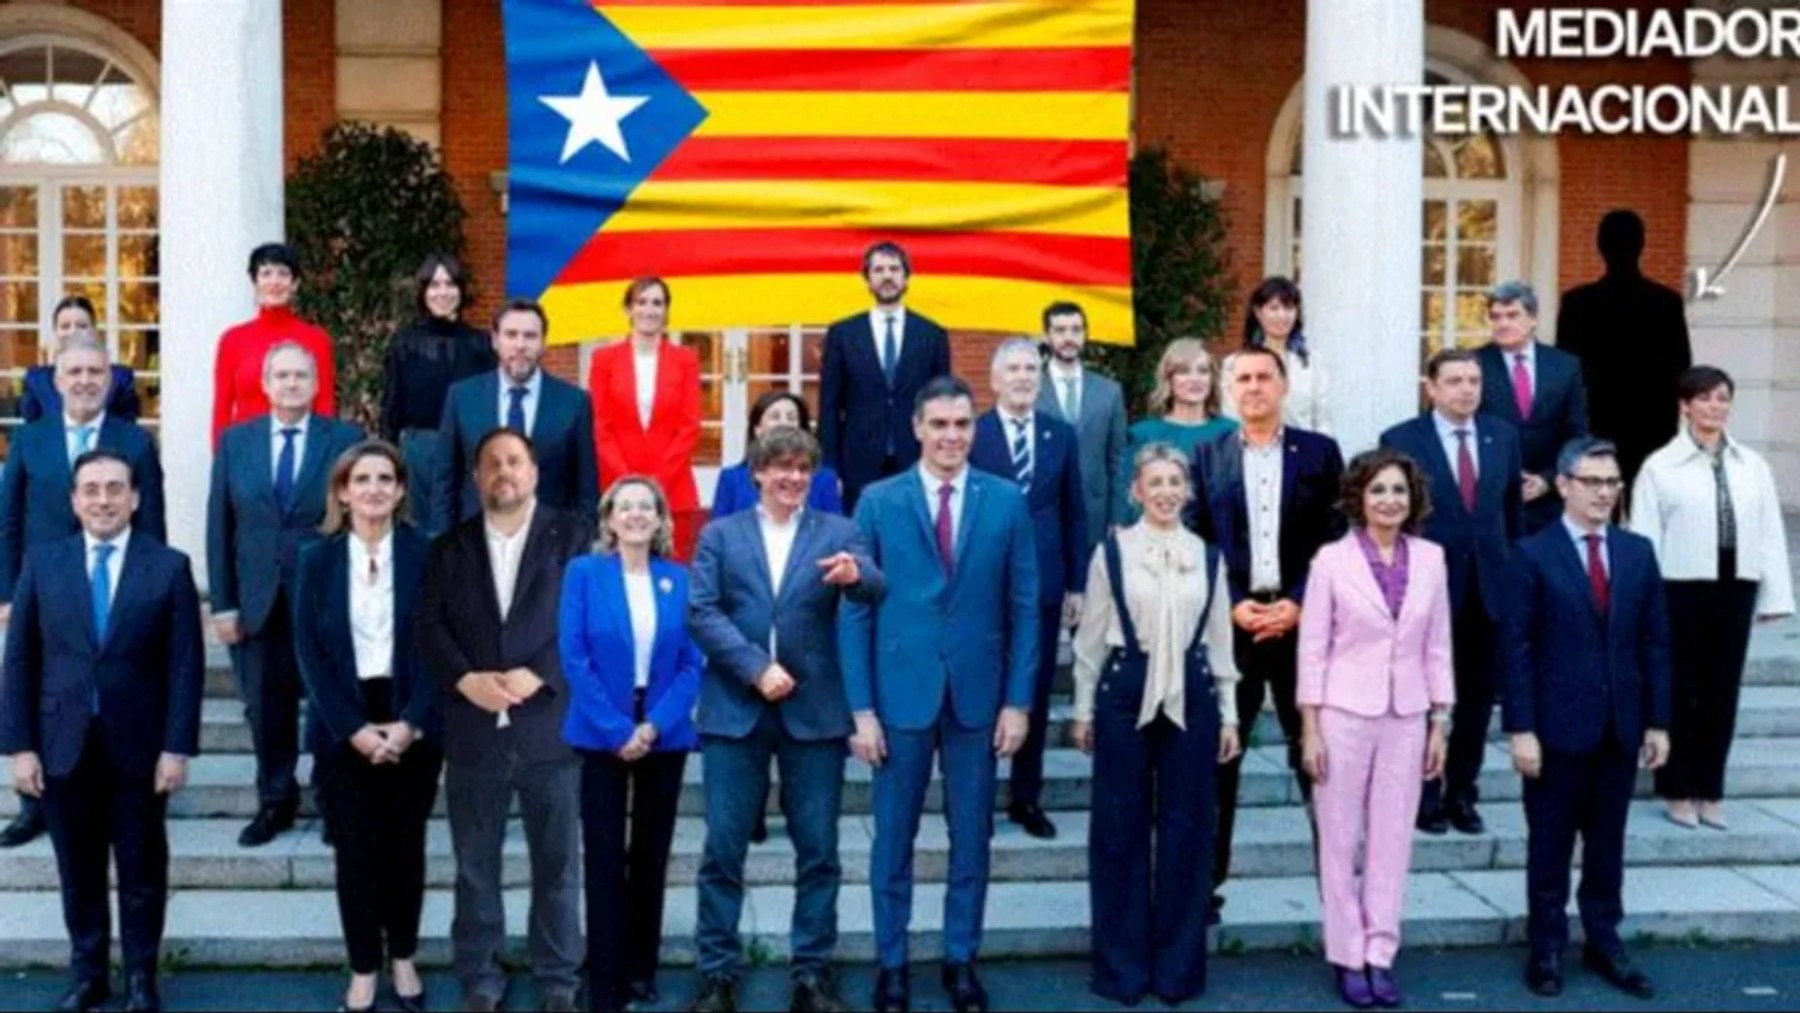 Imagen difundida por el PP criticando las alianzas de Sánchez.